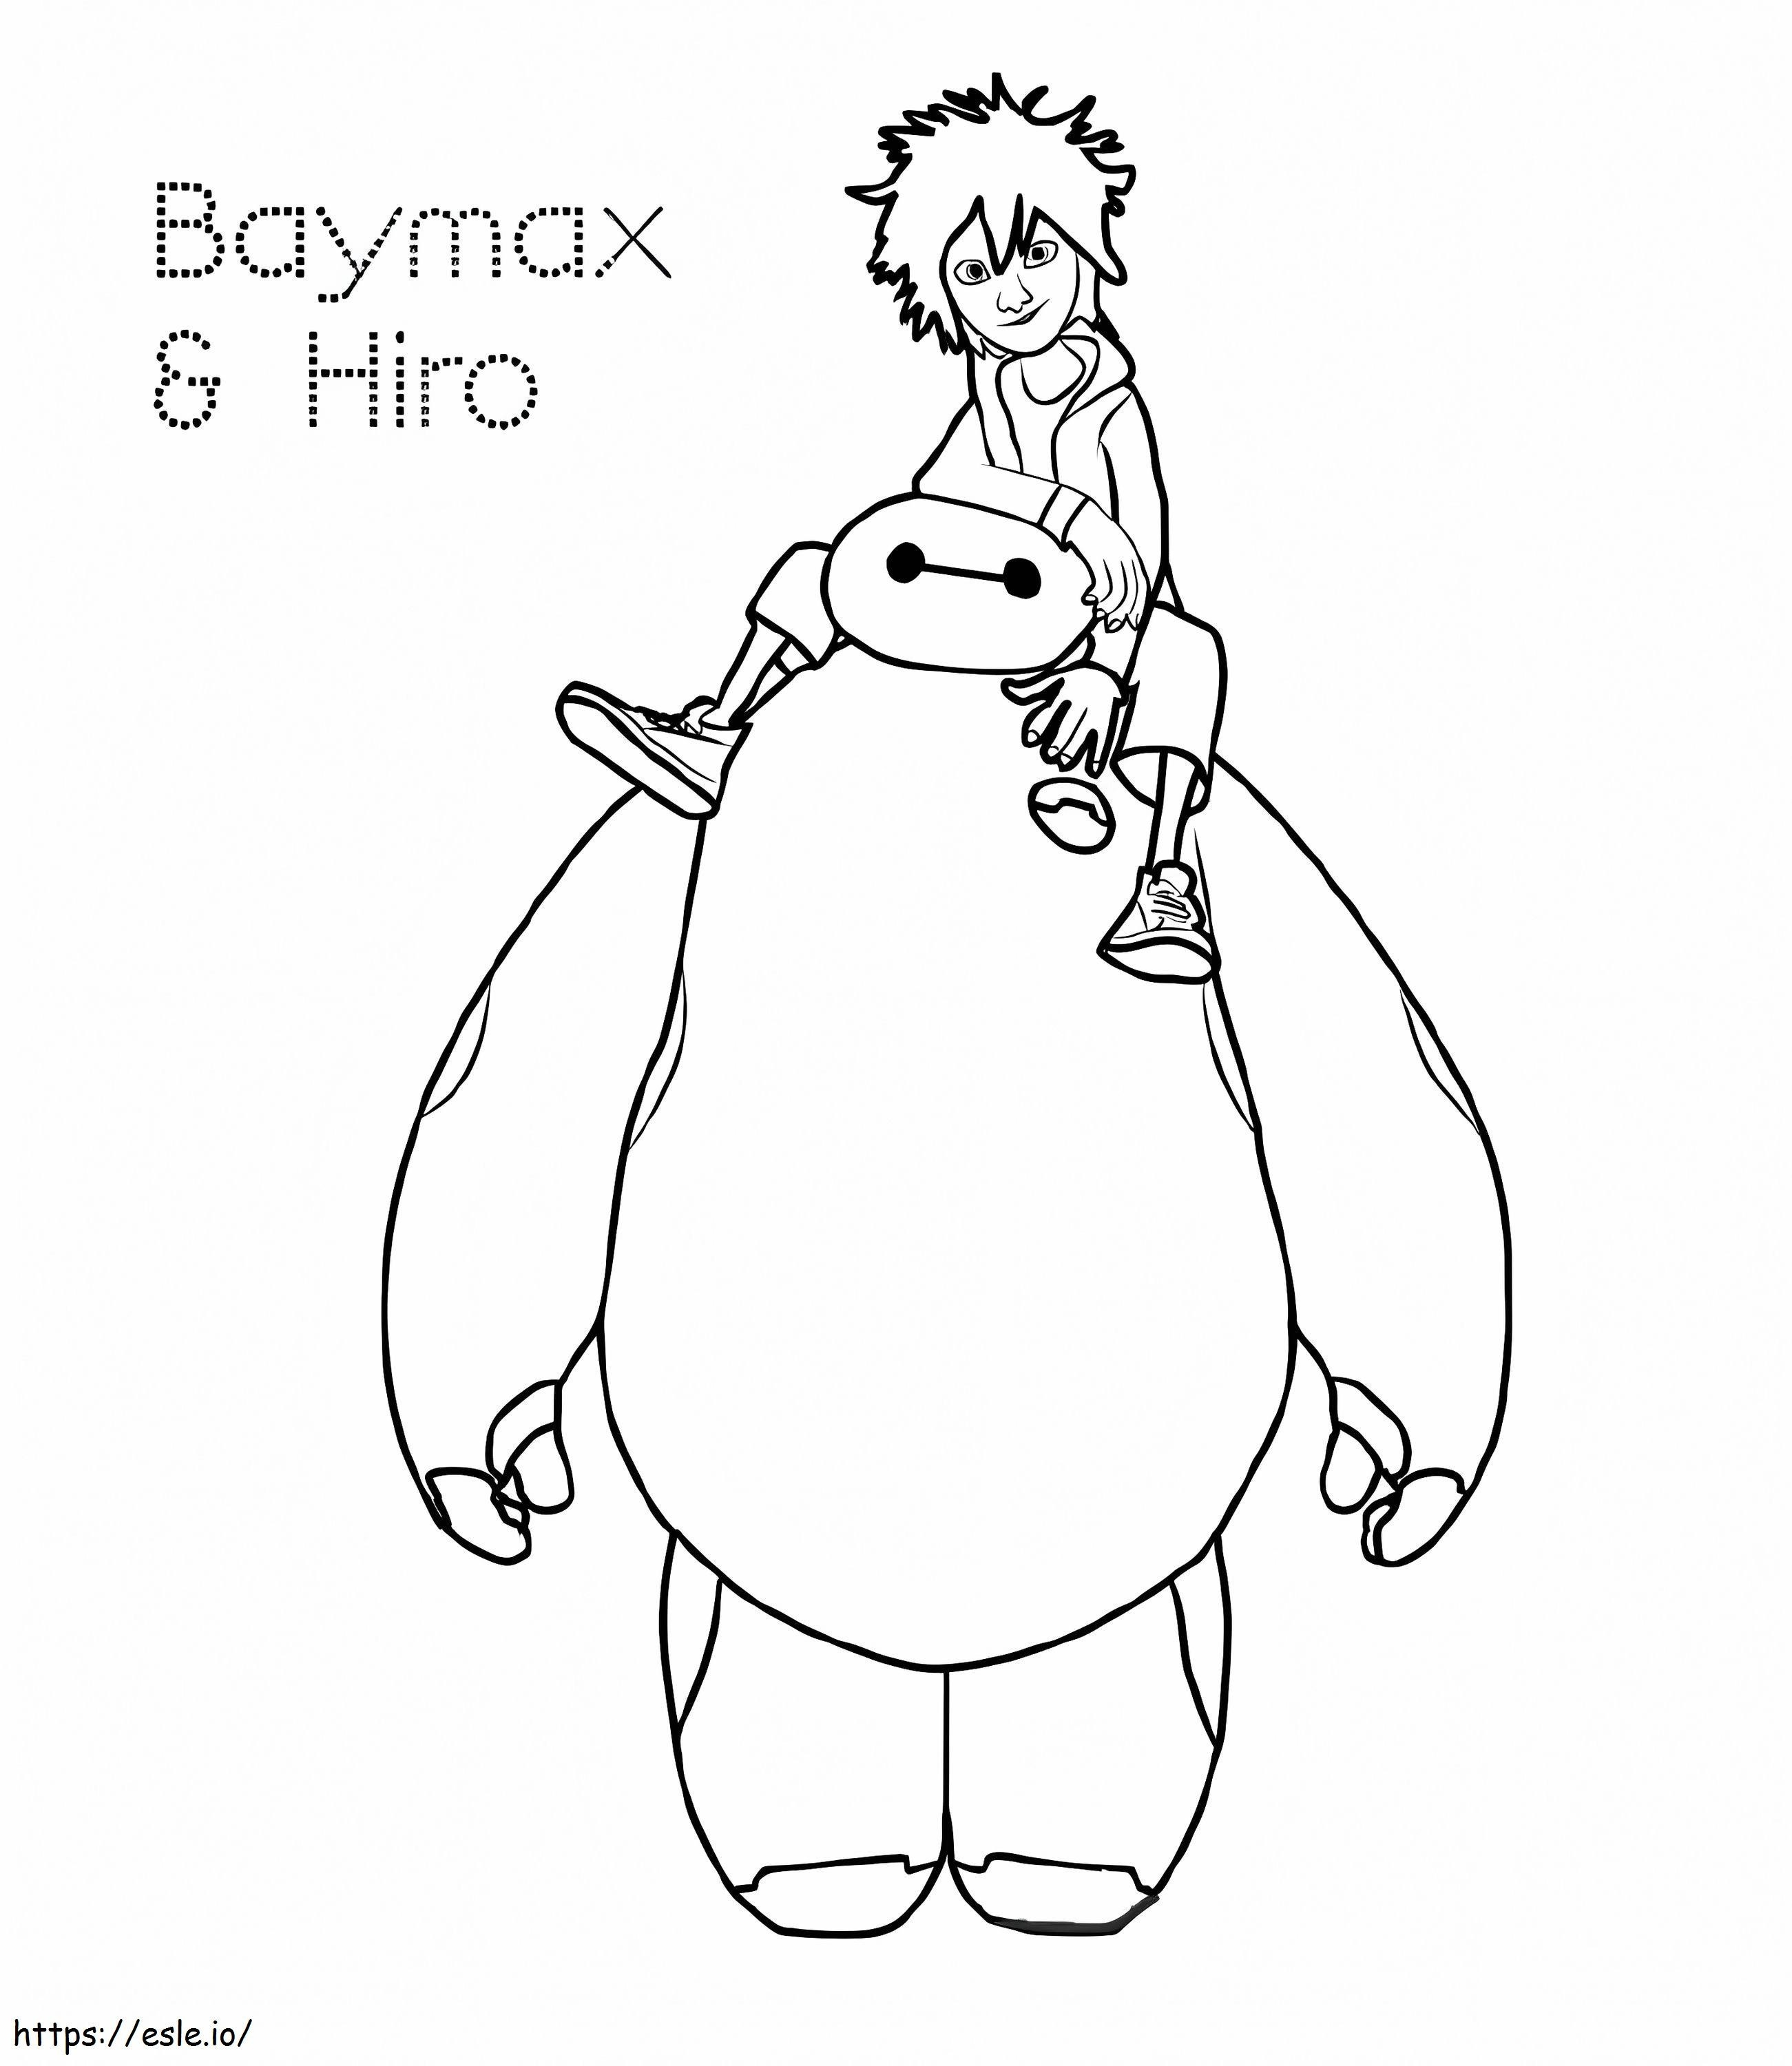 Hiro ja Baymax värityskuva